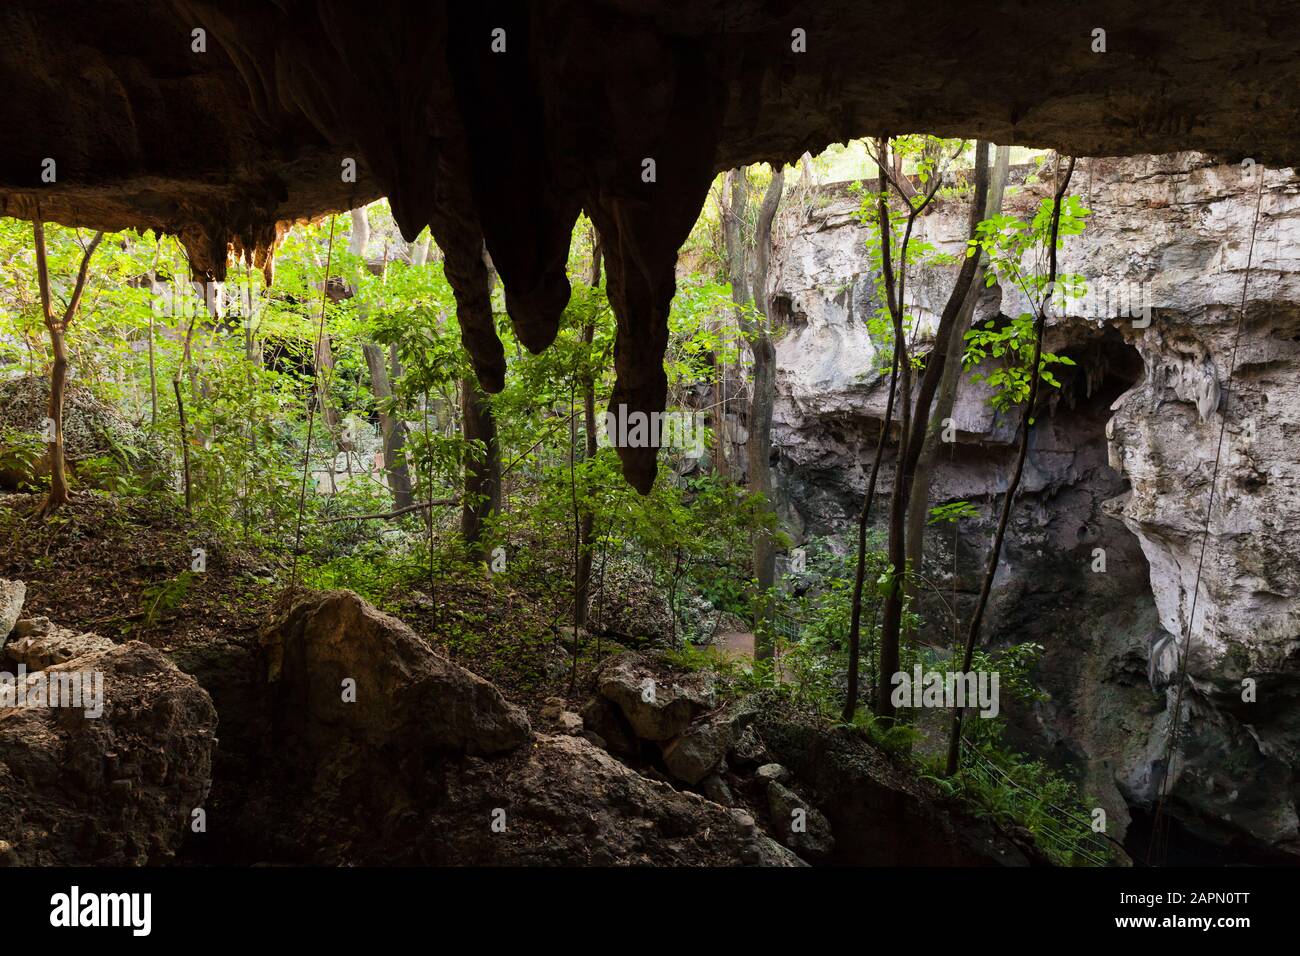 Grotta Los Tres Ojos O I Tre Occhi In Inglese. Stalattiti della grotta calcarea all'aperto situata nel parco Mirador del Este, a Santo Domingo Foto Stock